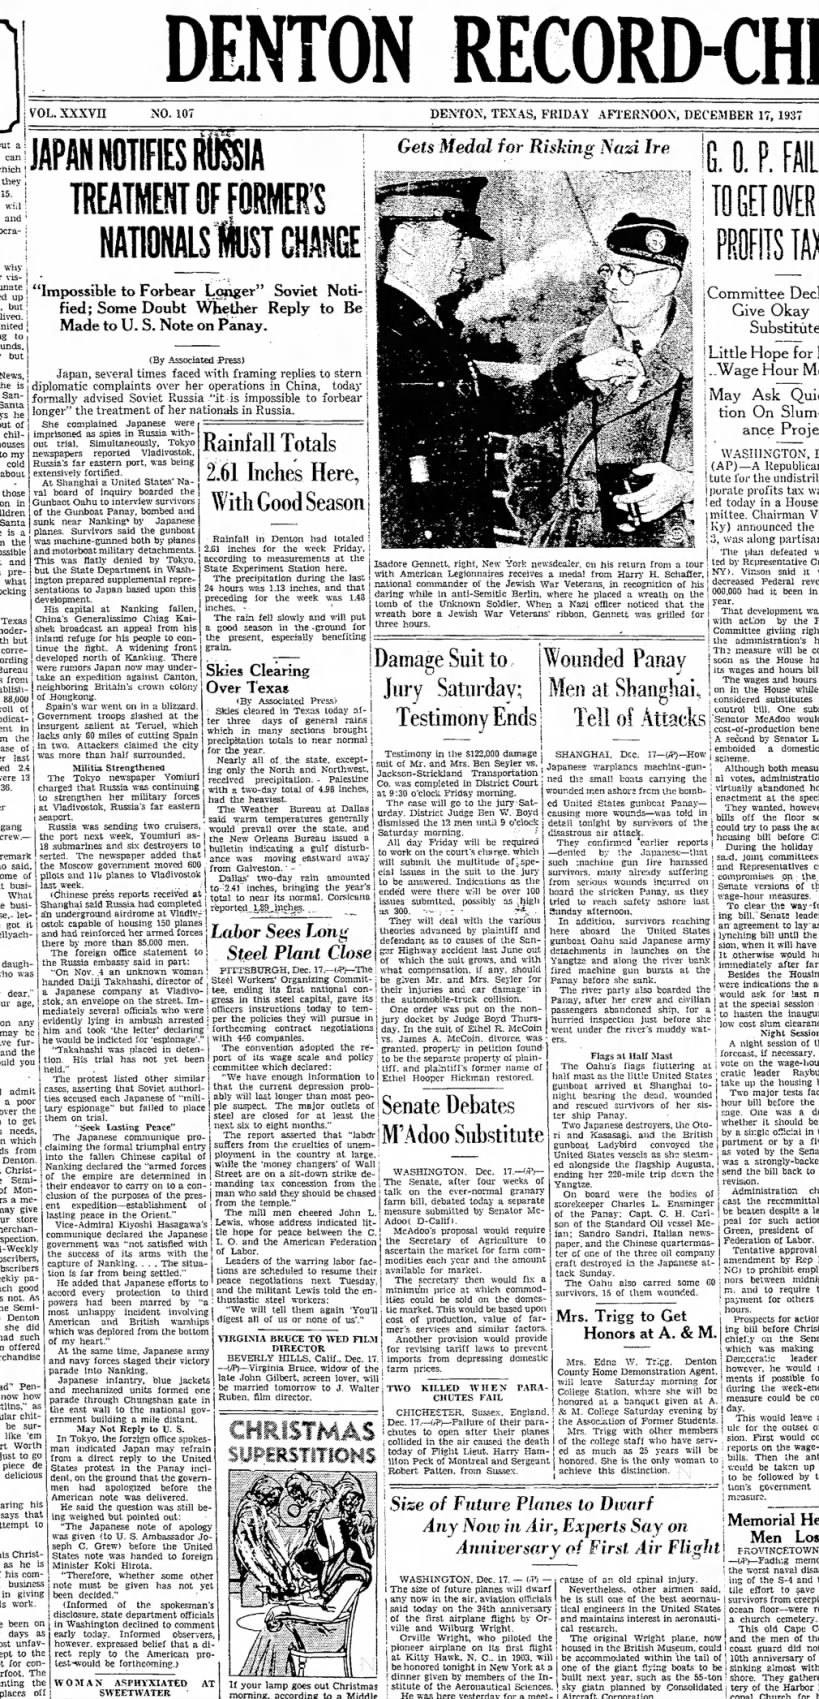 ????????
Dec 17, 1937
Denton Record -Chronicle - Denton, Texas